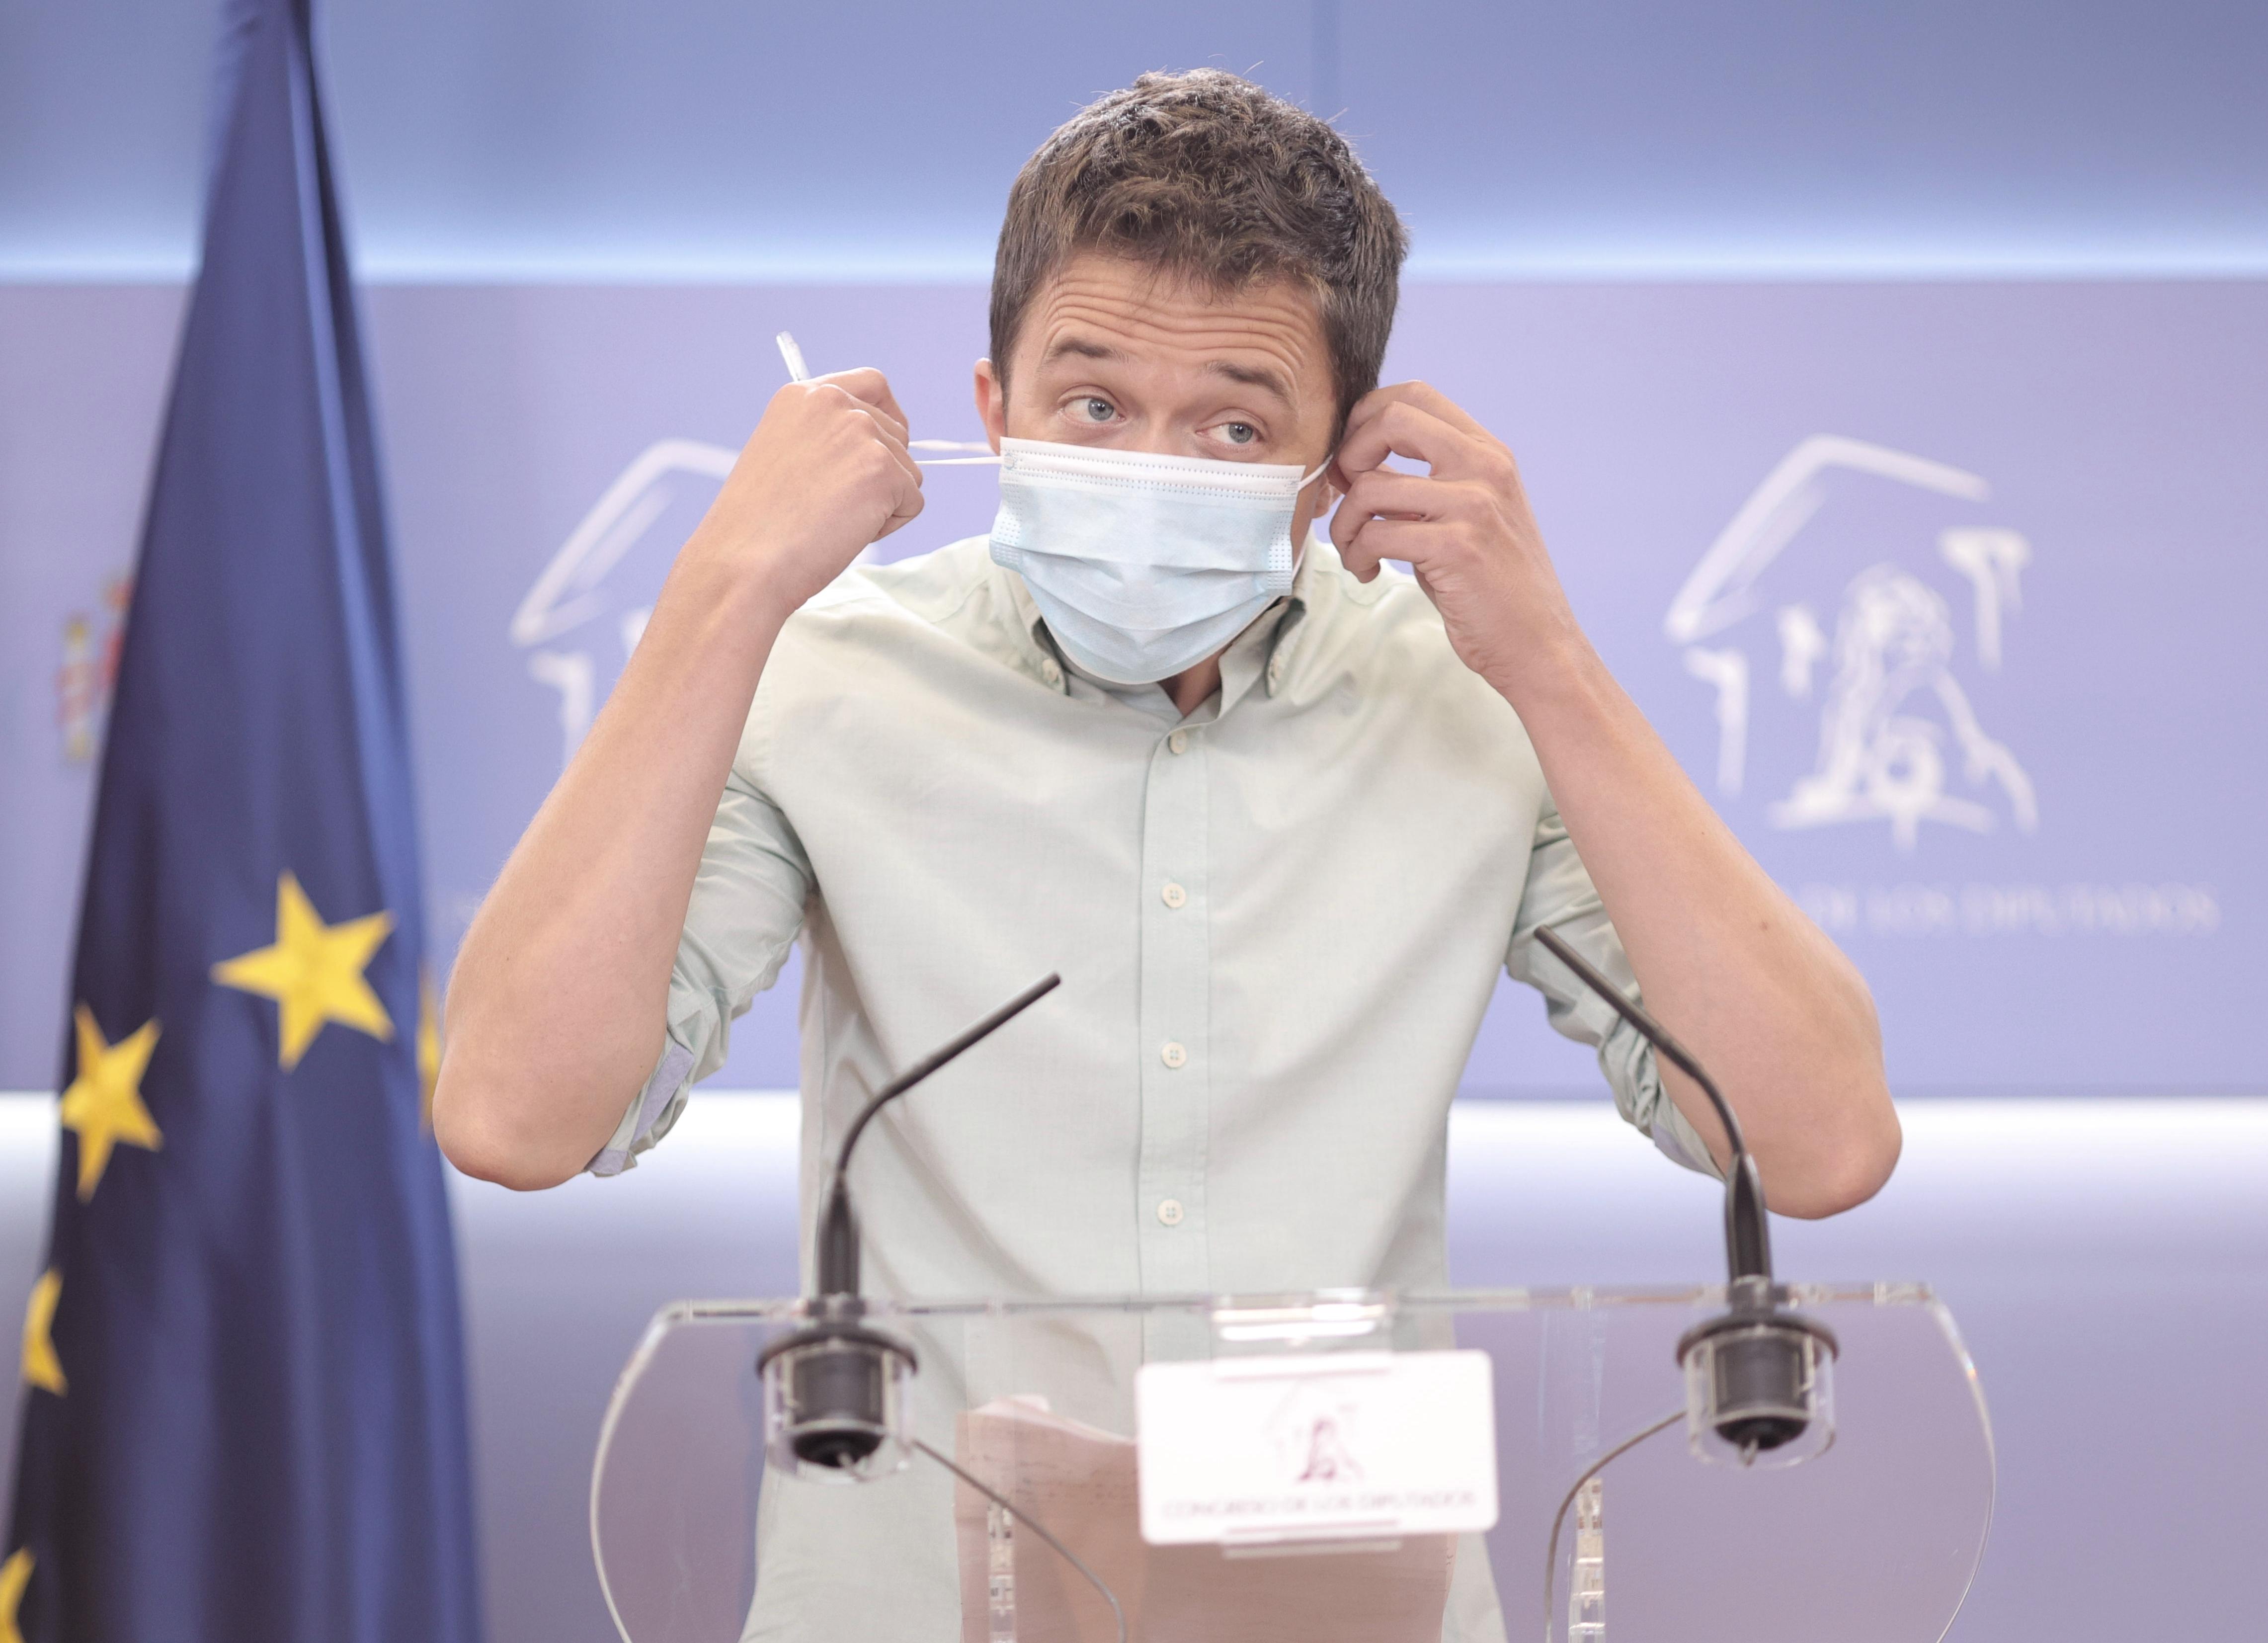 El líder de Más País, Íñigo Errejón, se quita la mascarilla para intervenir en una rueda de prensa anterior a una reunión de la Junta de Portavoces en el Congreso de los Diputados, a 22 de junio de 2021, en Madrid, (España).